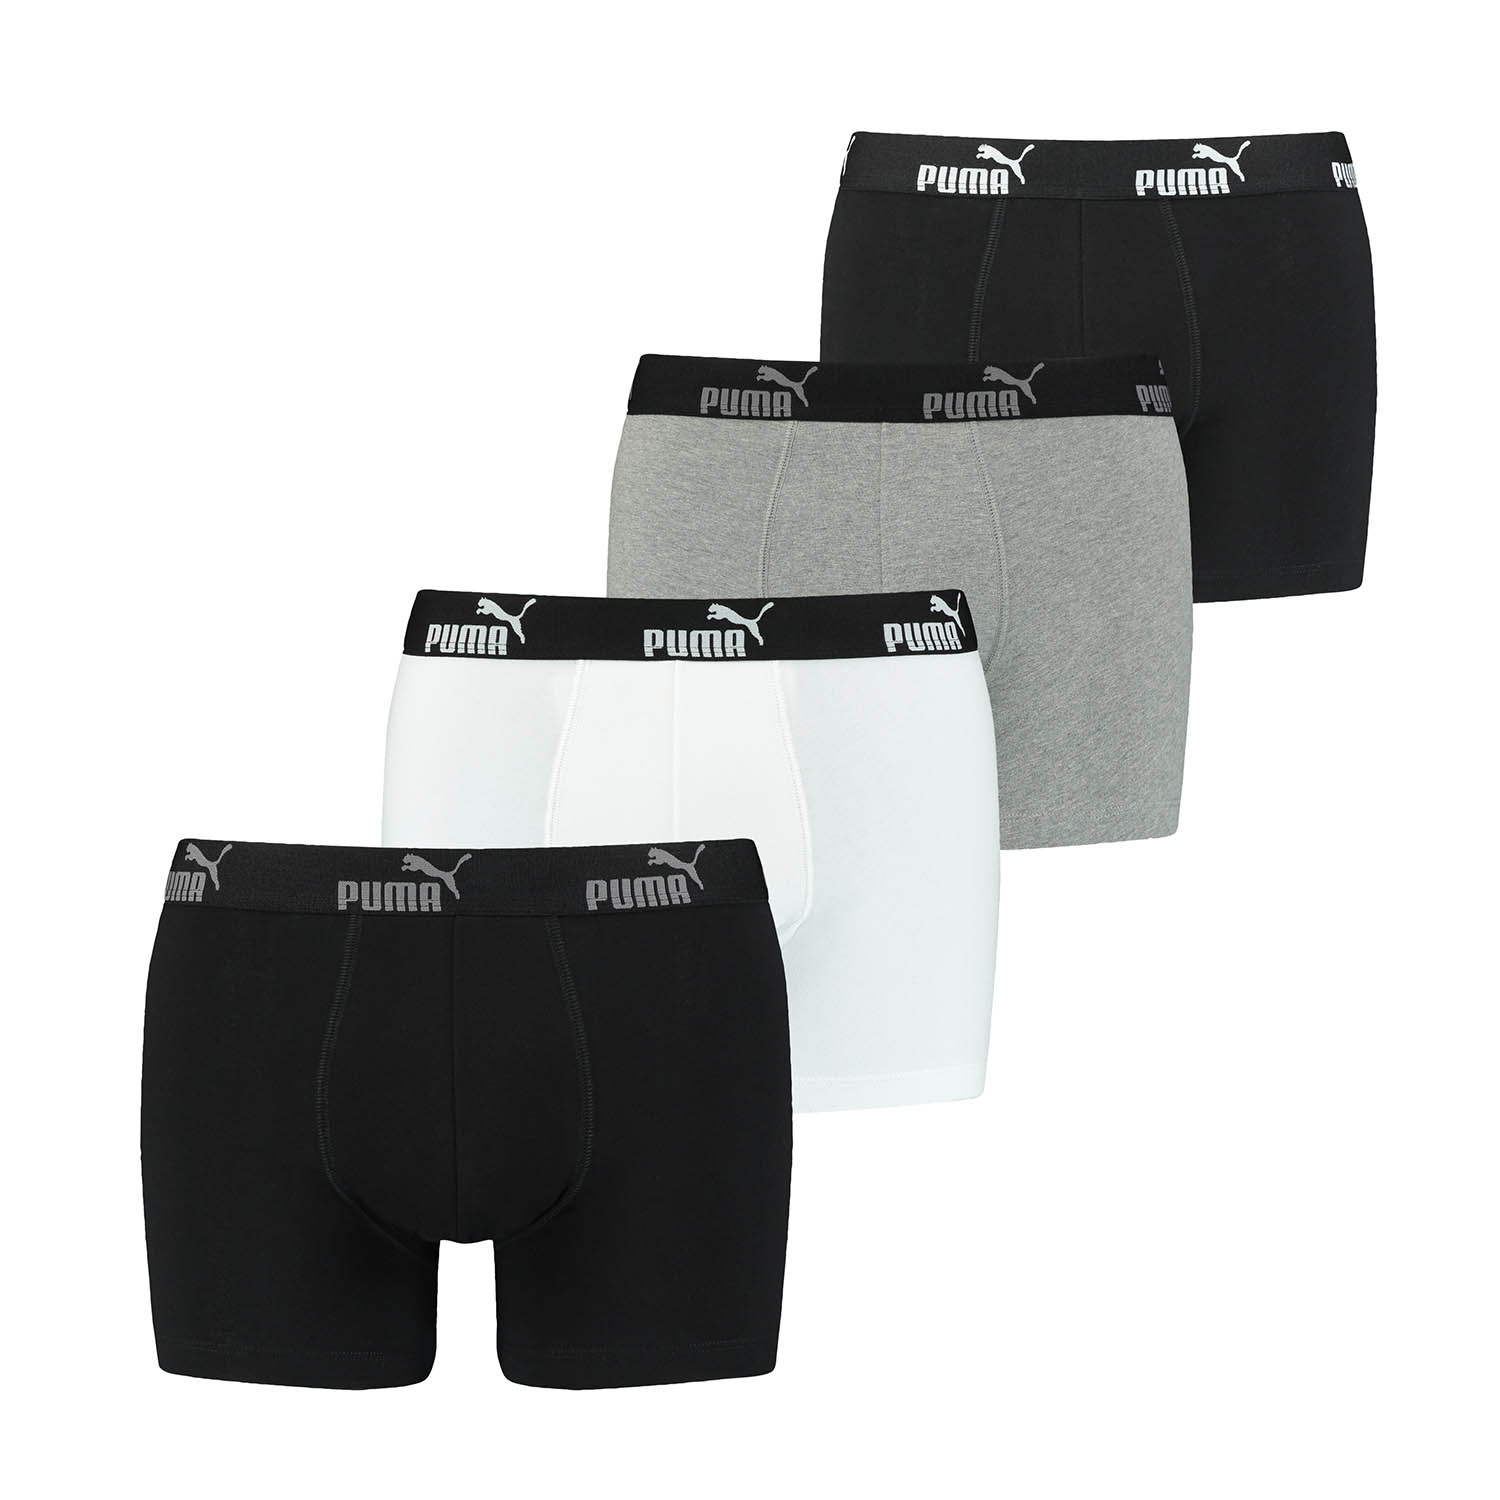 PUMA 8 er Pack Boxer Boxershorts Herren Unterwäsche sportliche Retro Pants, Farbe:Black Combo, Bekleidungsgröße:S